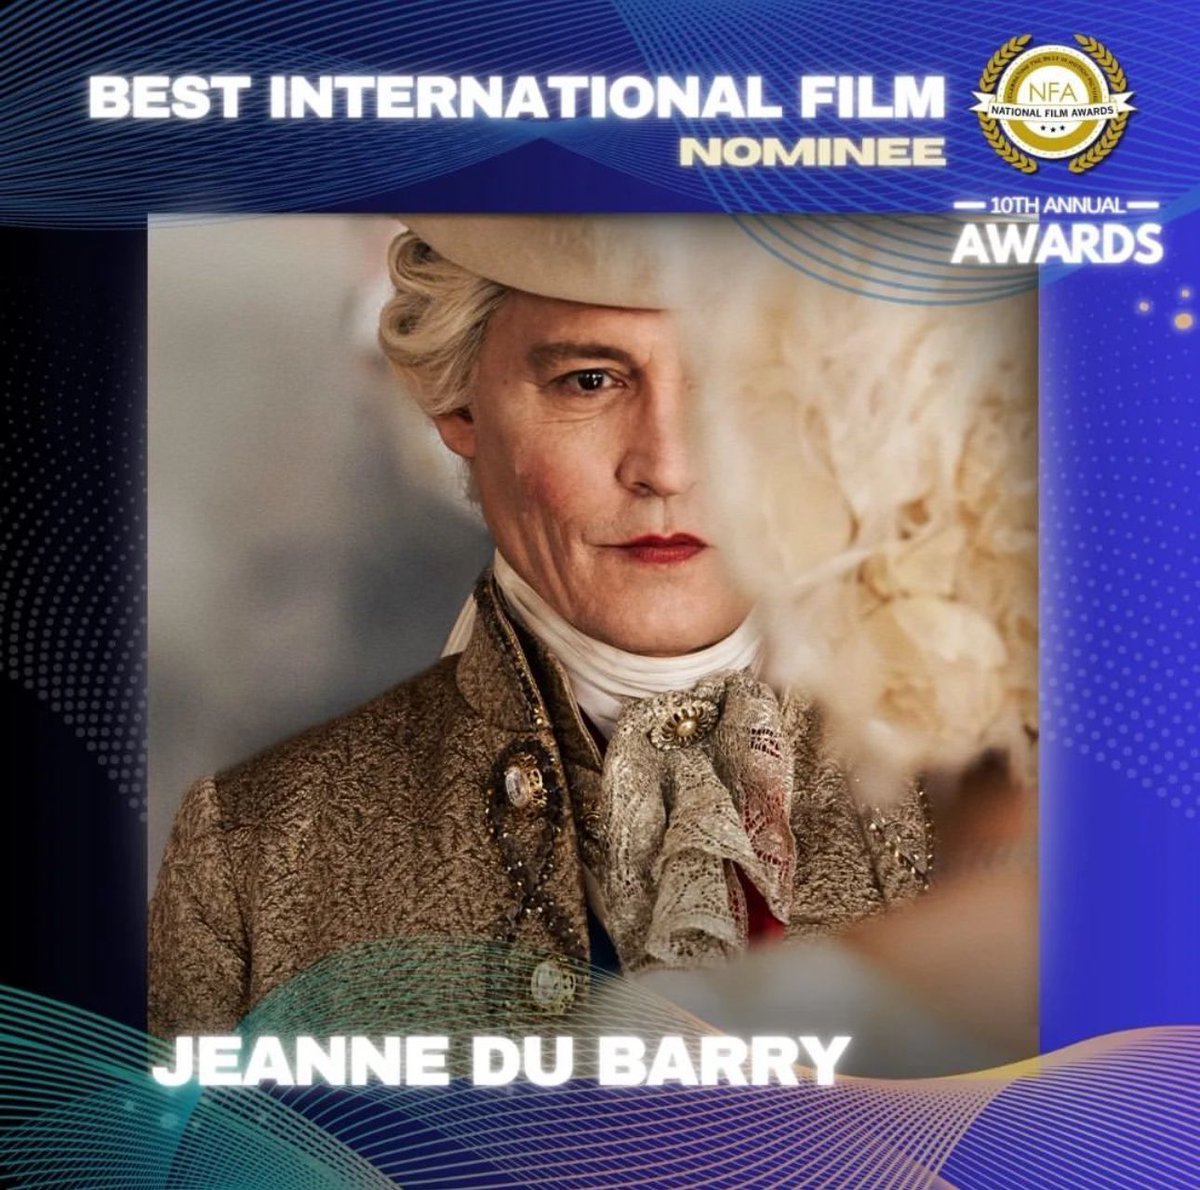 #JeanneDuBarry has been nominated!! Go vote at nationalfilmacademy.org #JohnnyDepp #JohnnyDeppKeepsWinning  #IStandWithJohnnyDepp #JohnnyDeppIsALegend